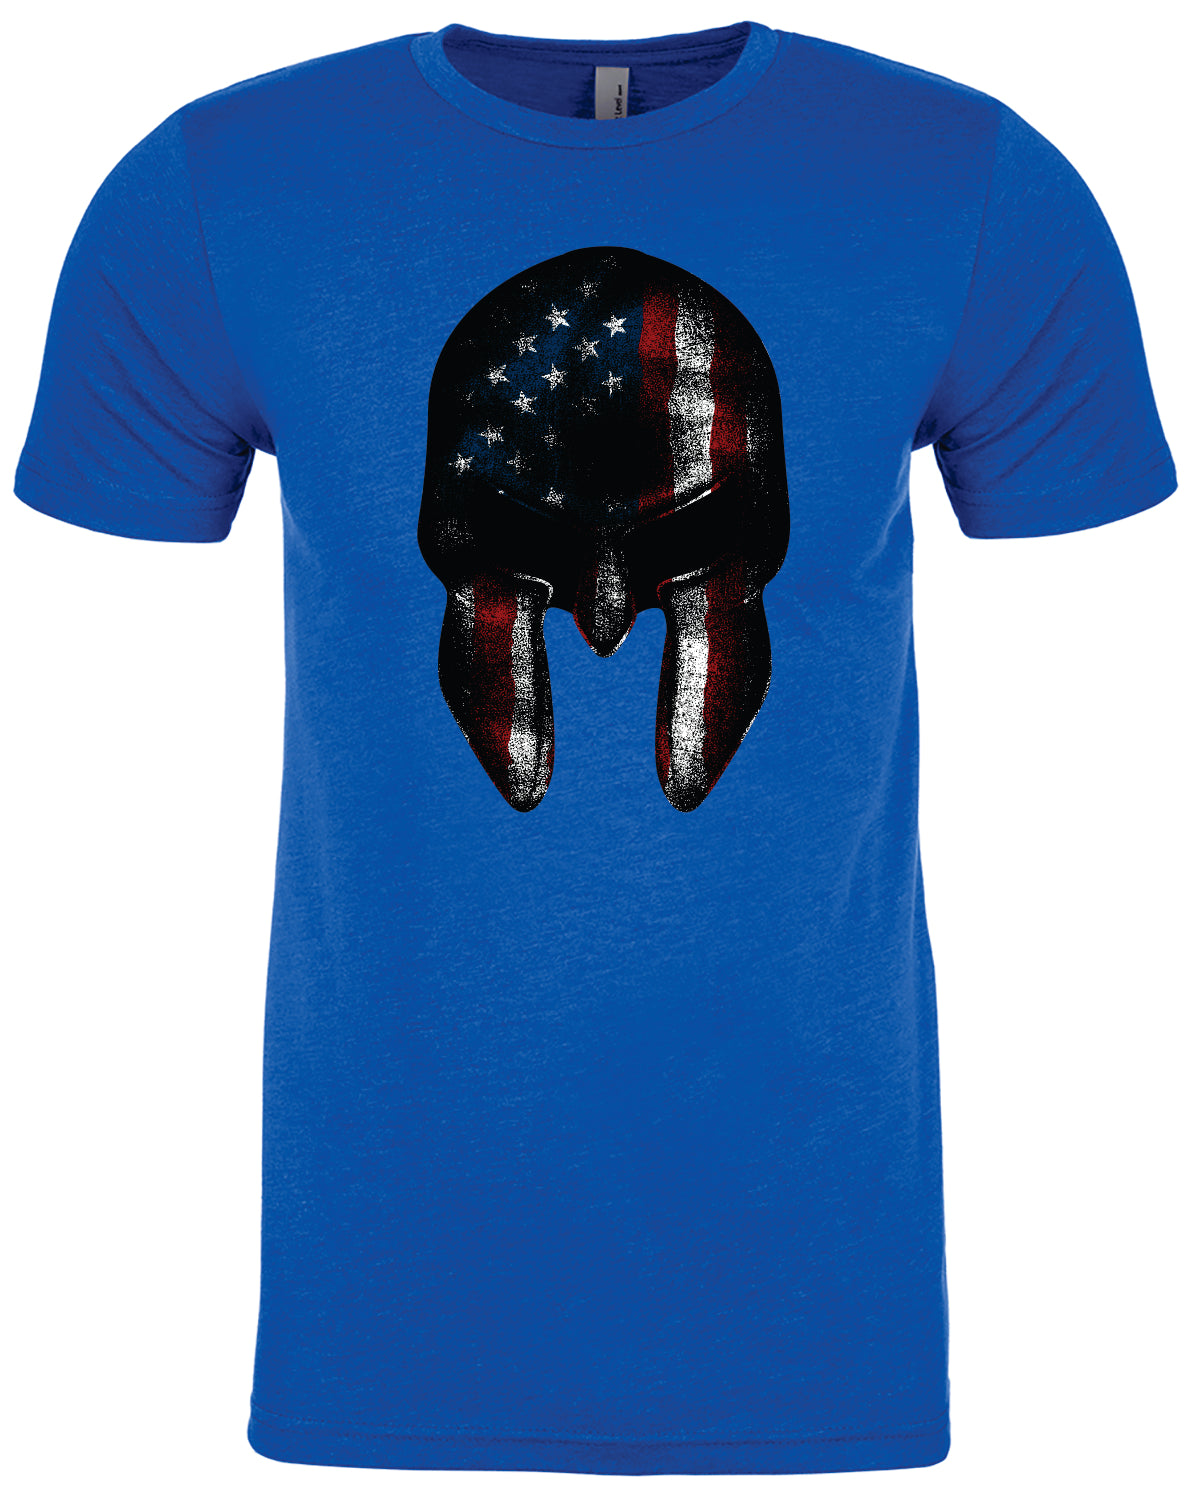 American Spartan T-Shirt